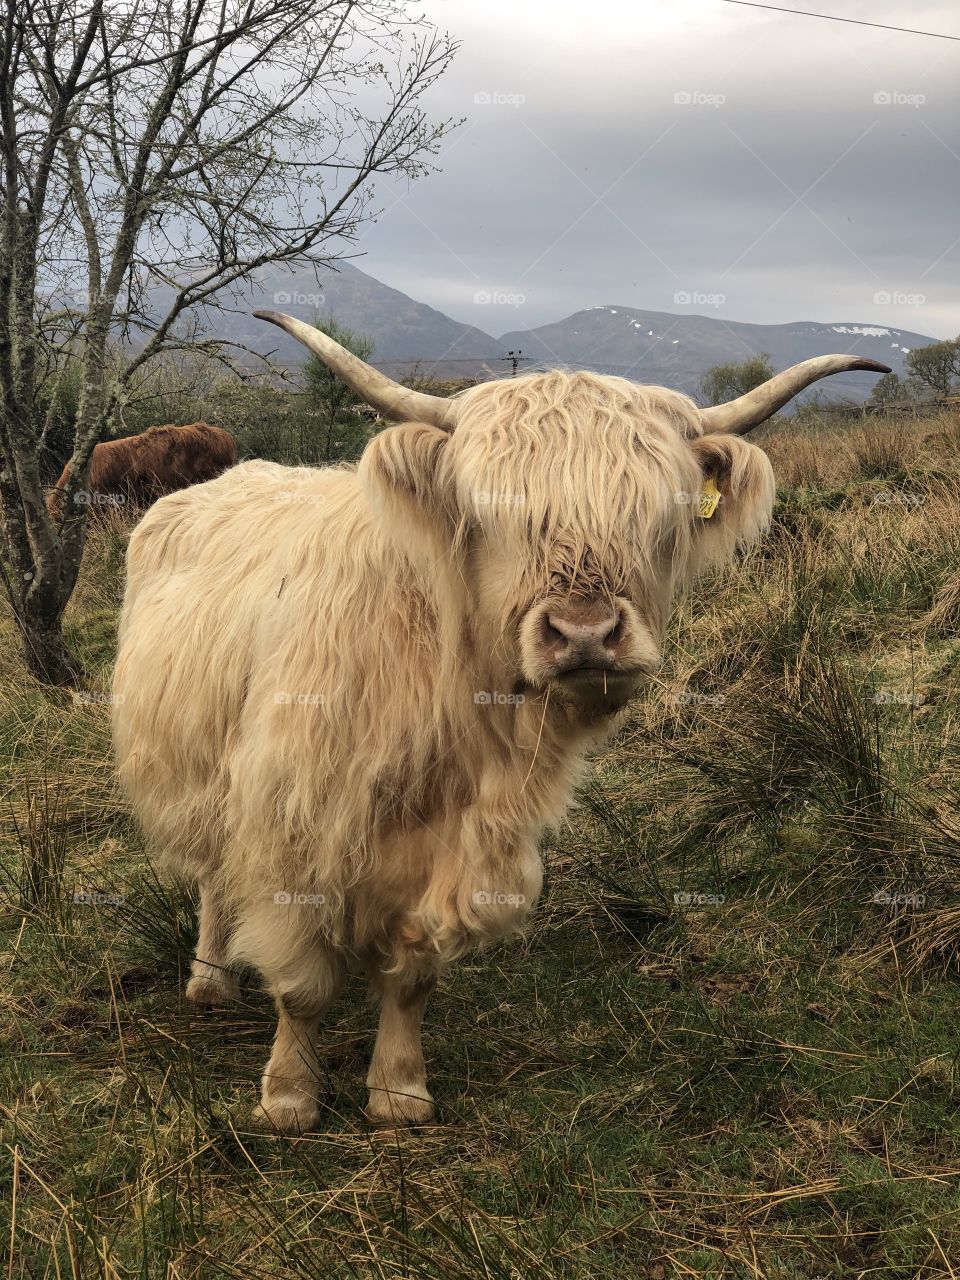 A curious highland cow